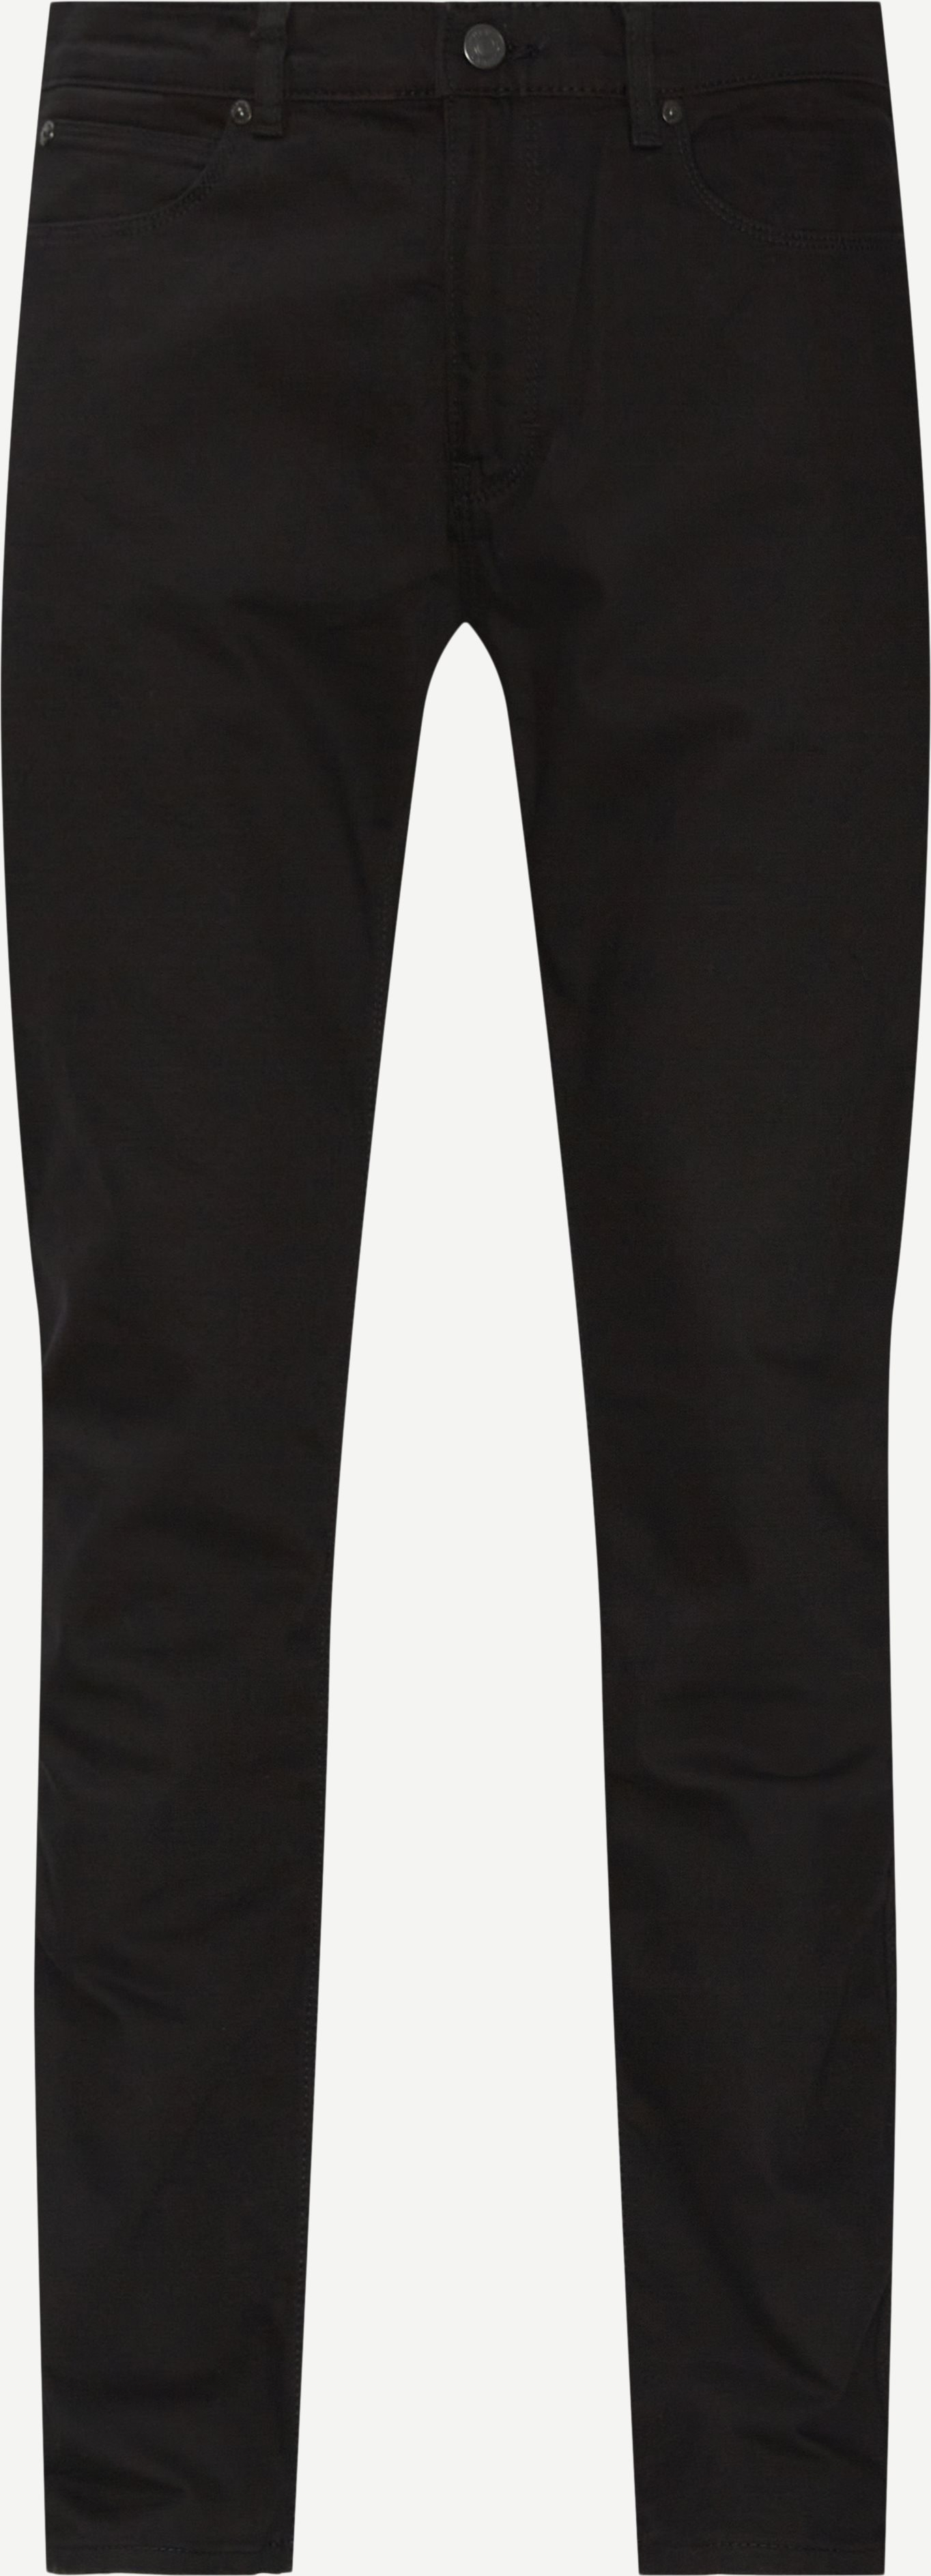 Hugo 708 Jeans - Jeans - Slim fit - Sort